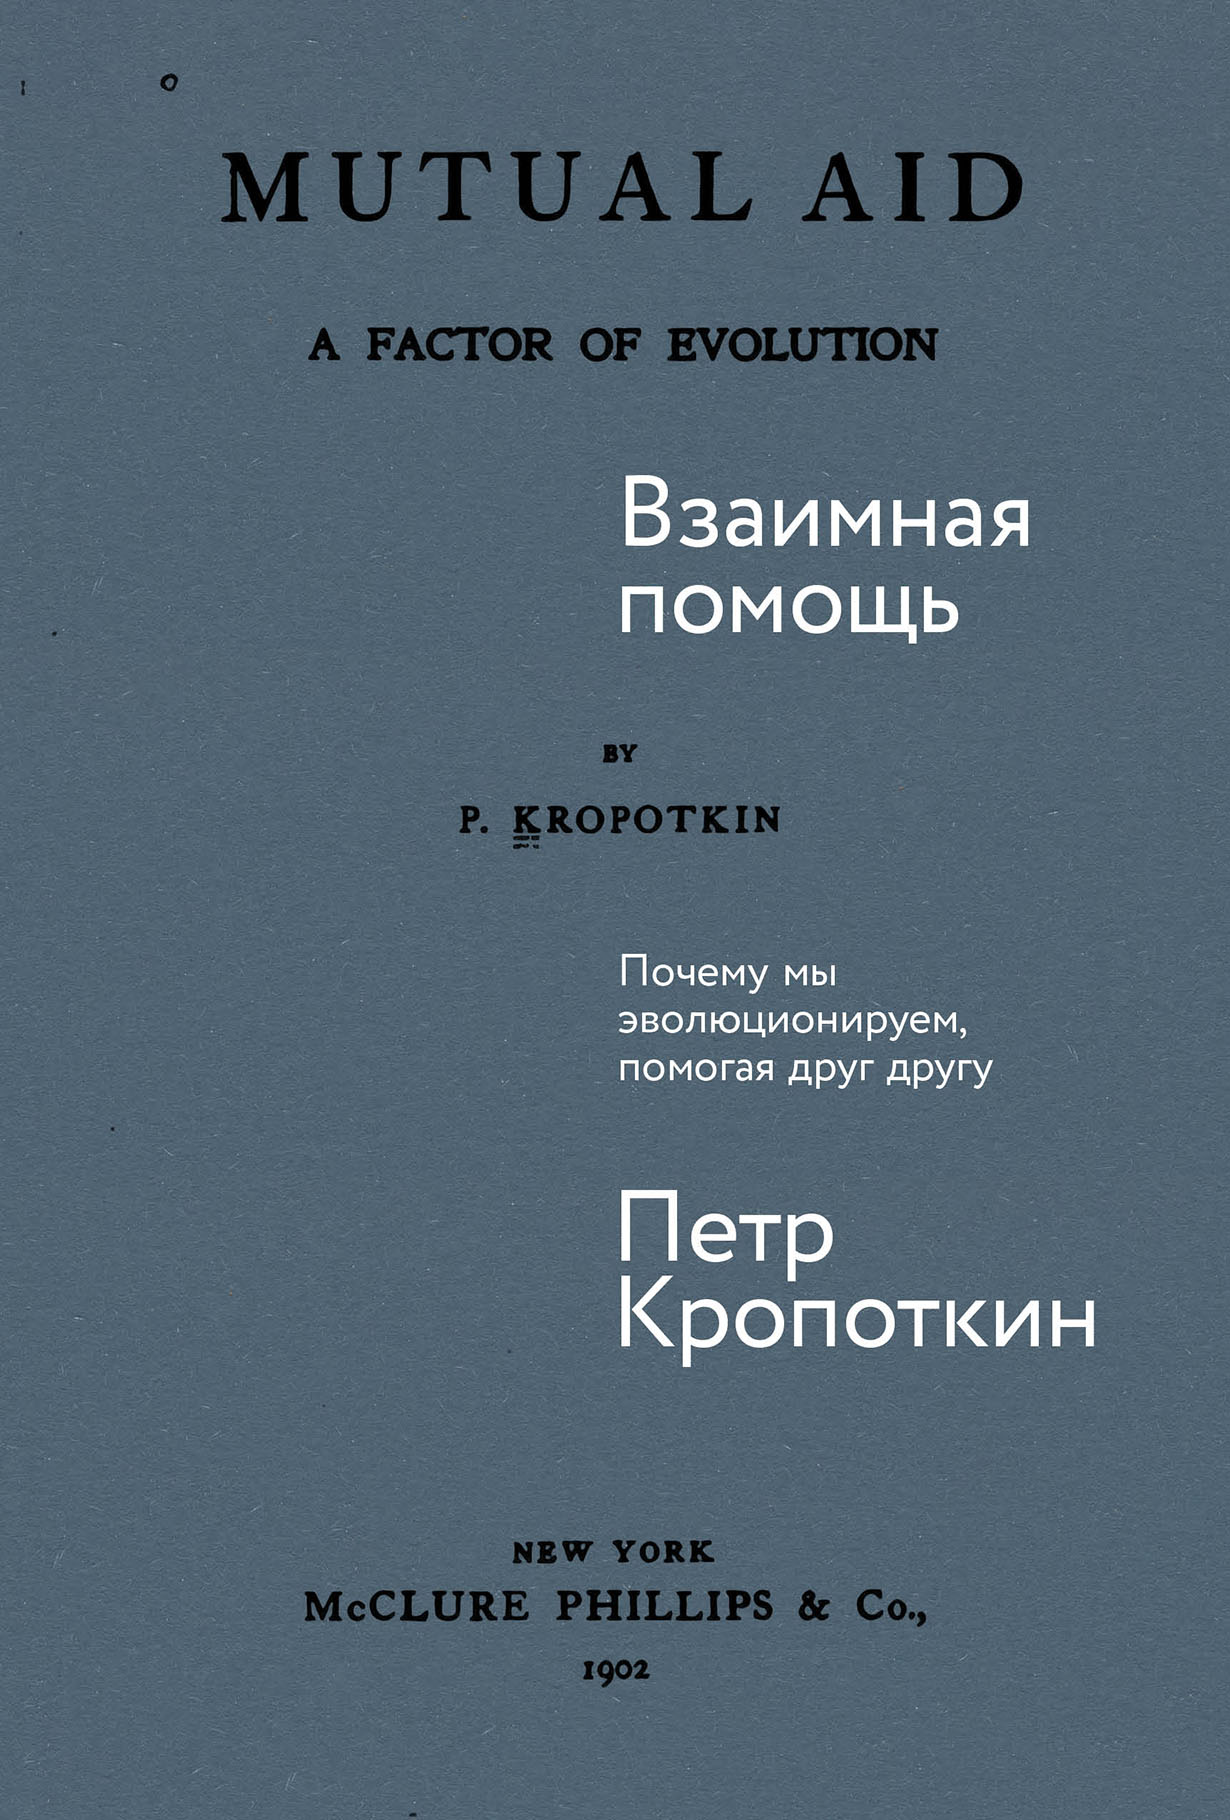 Взаимная помощь: Почему мы эволюционируем, помогая друг другу — купить книгу Петра Кропоткина на сайте alpinabook.ru